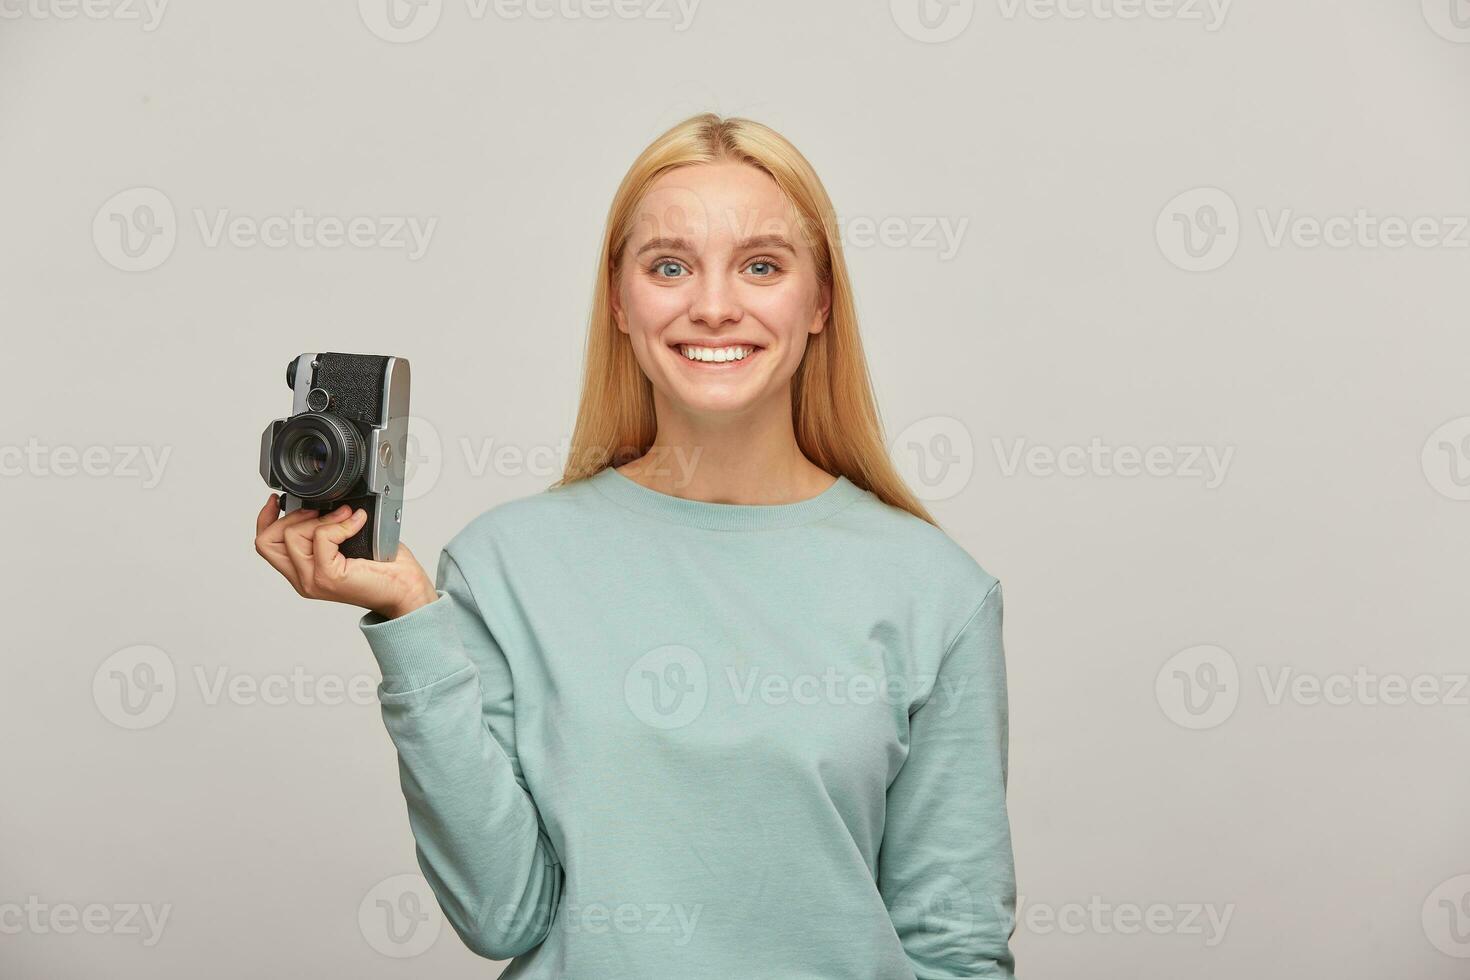 schön Mädchen Fotograf sieht aus glücklich lächelnd, halten ein retro Jahrgang Foto Kamera im einer Hand, bekommt Vergnügen von das Schießen Verfahren, tragen Blau beiläufig Sweatshirt, Über grau Hintergrund